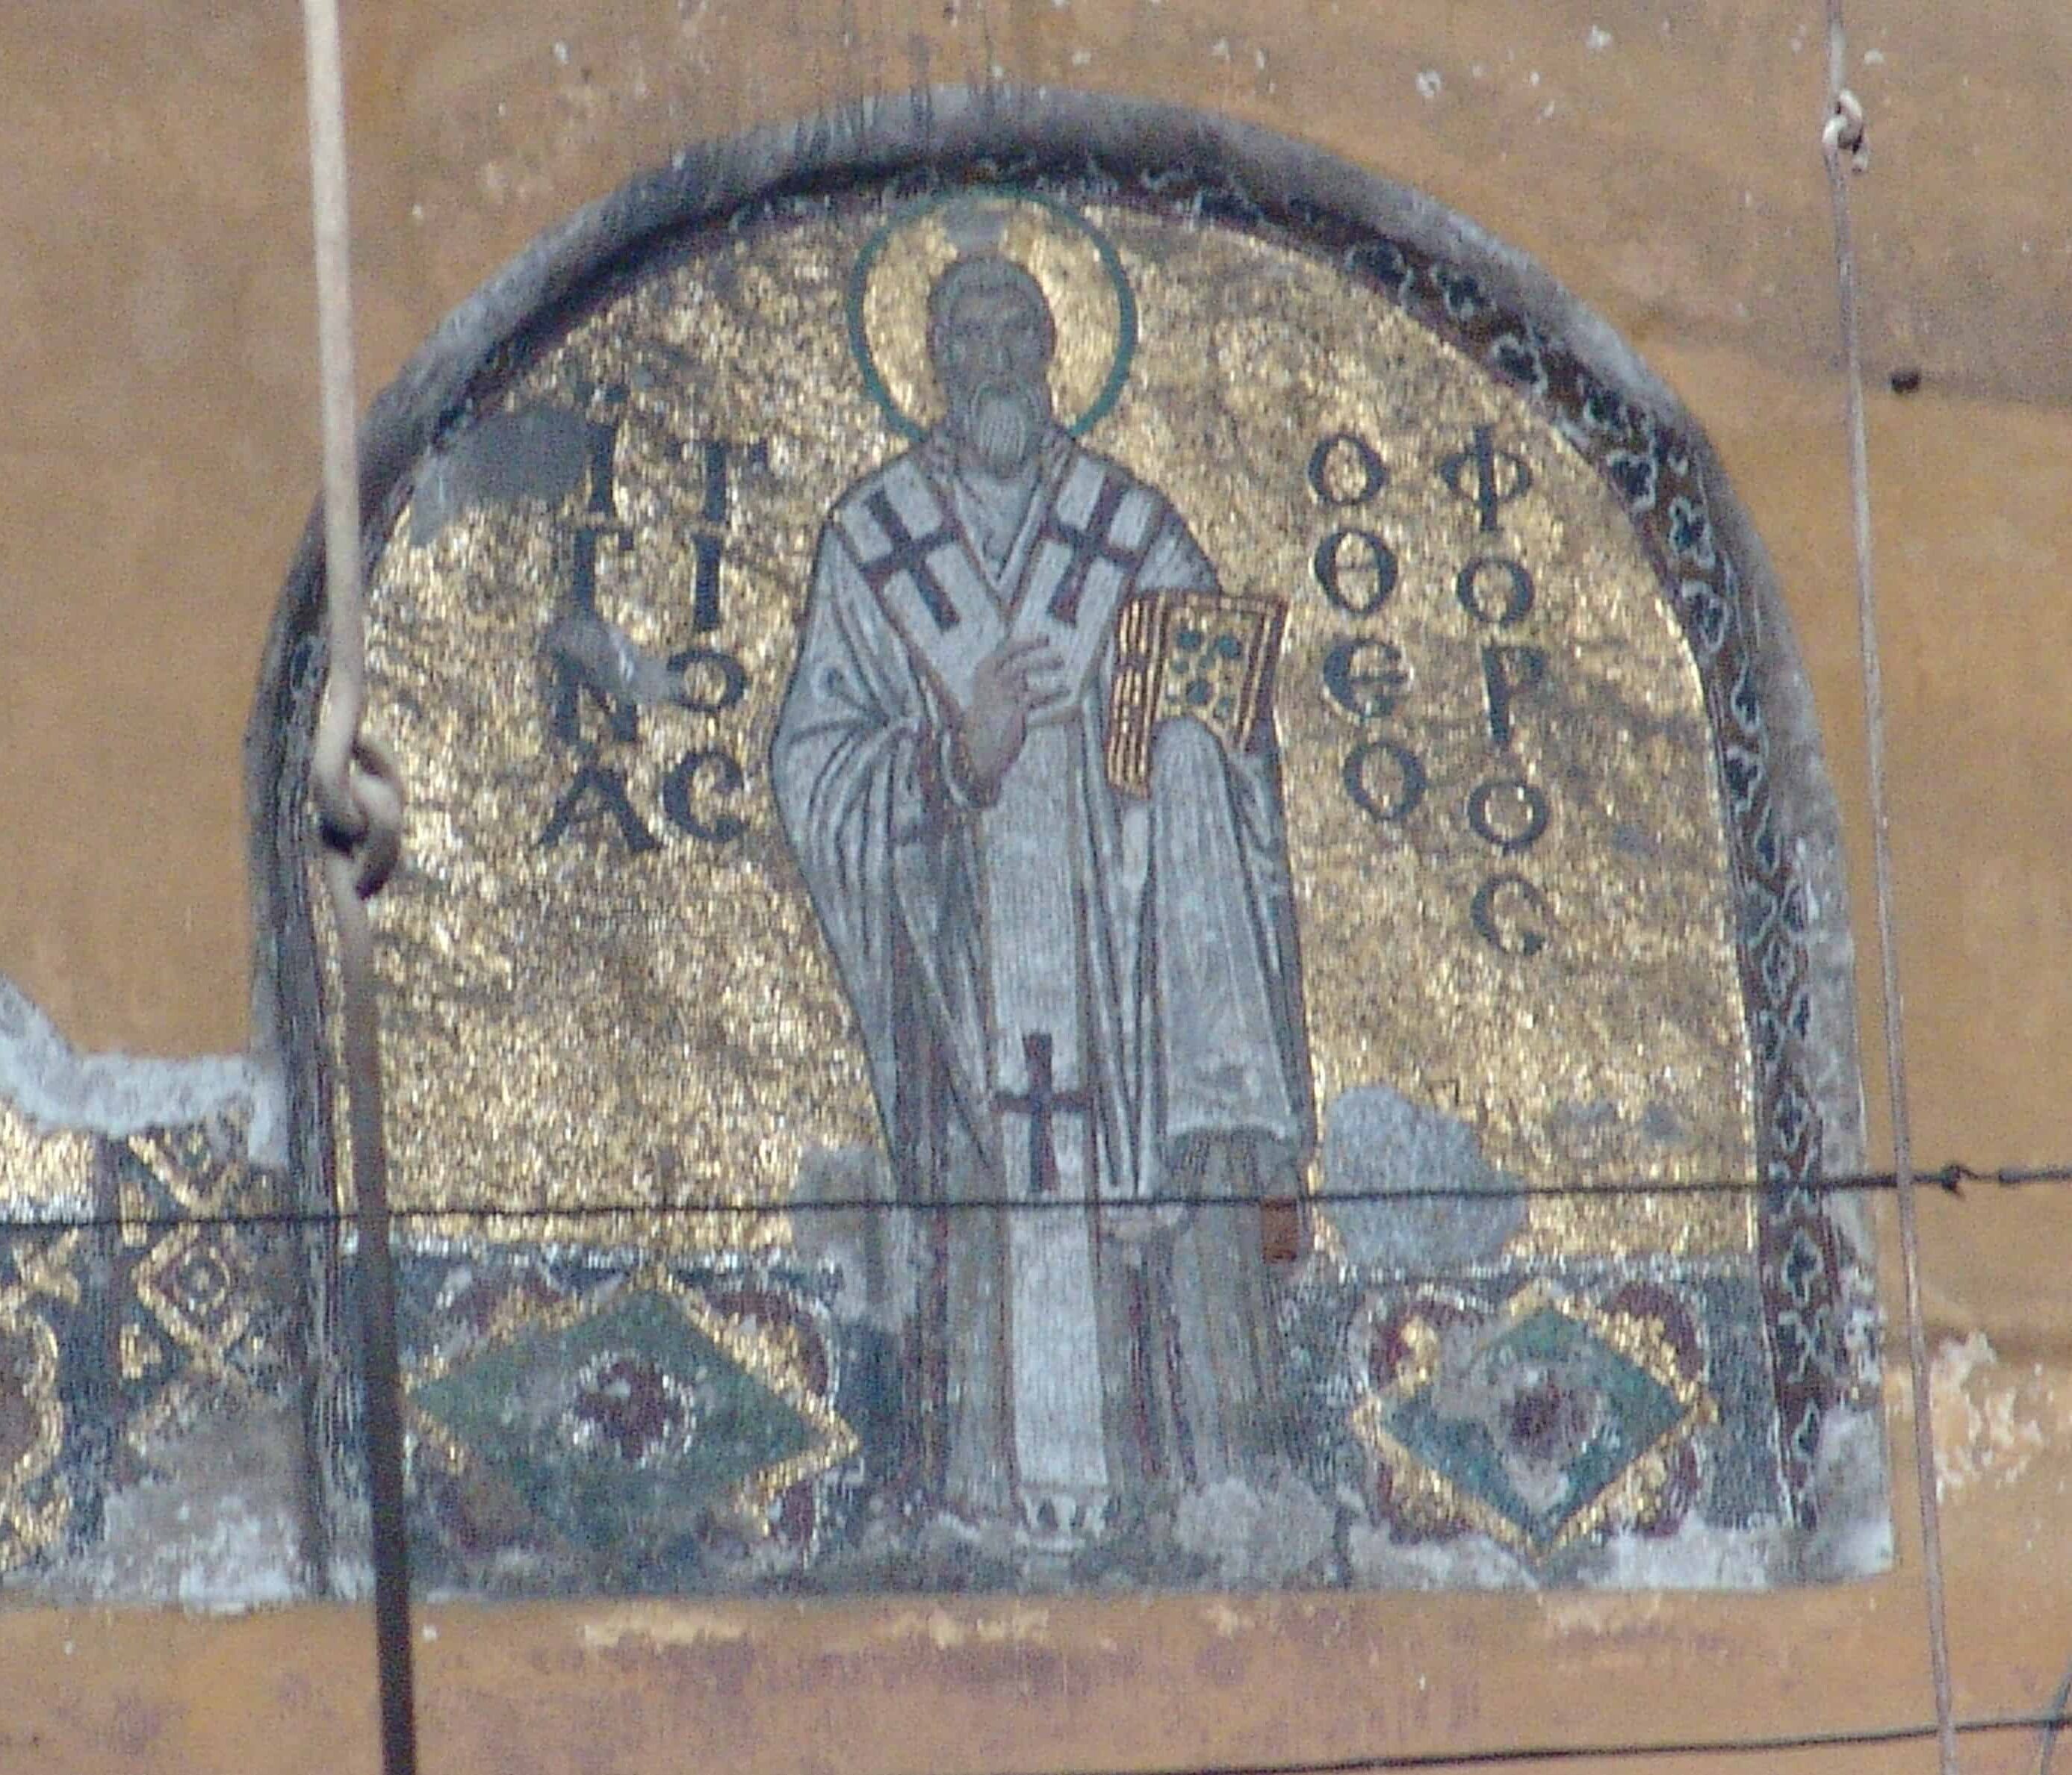 Mosaic of St. Ignatius Theophoros at Hagia Sophia in Istanbul, Turkey